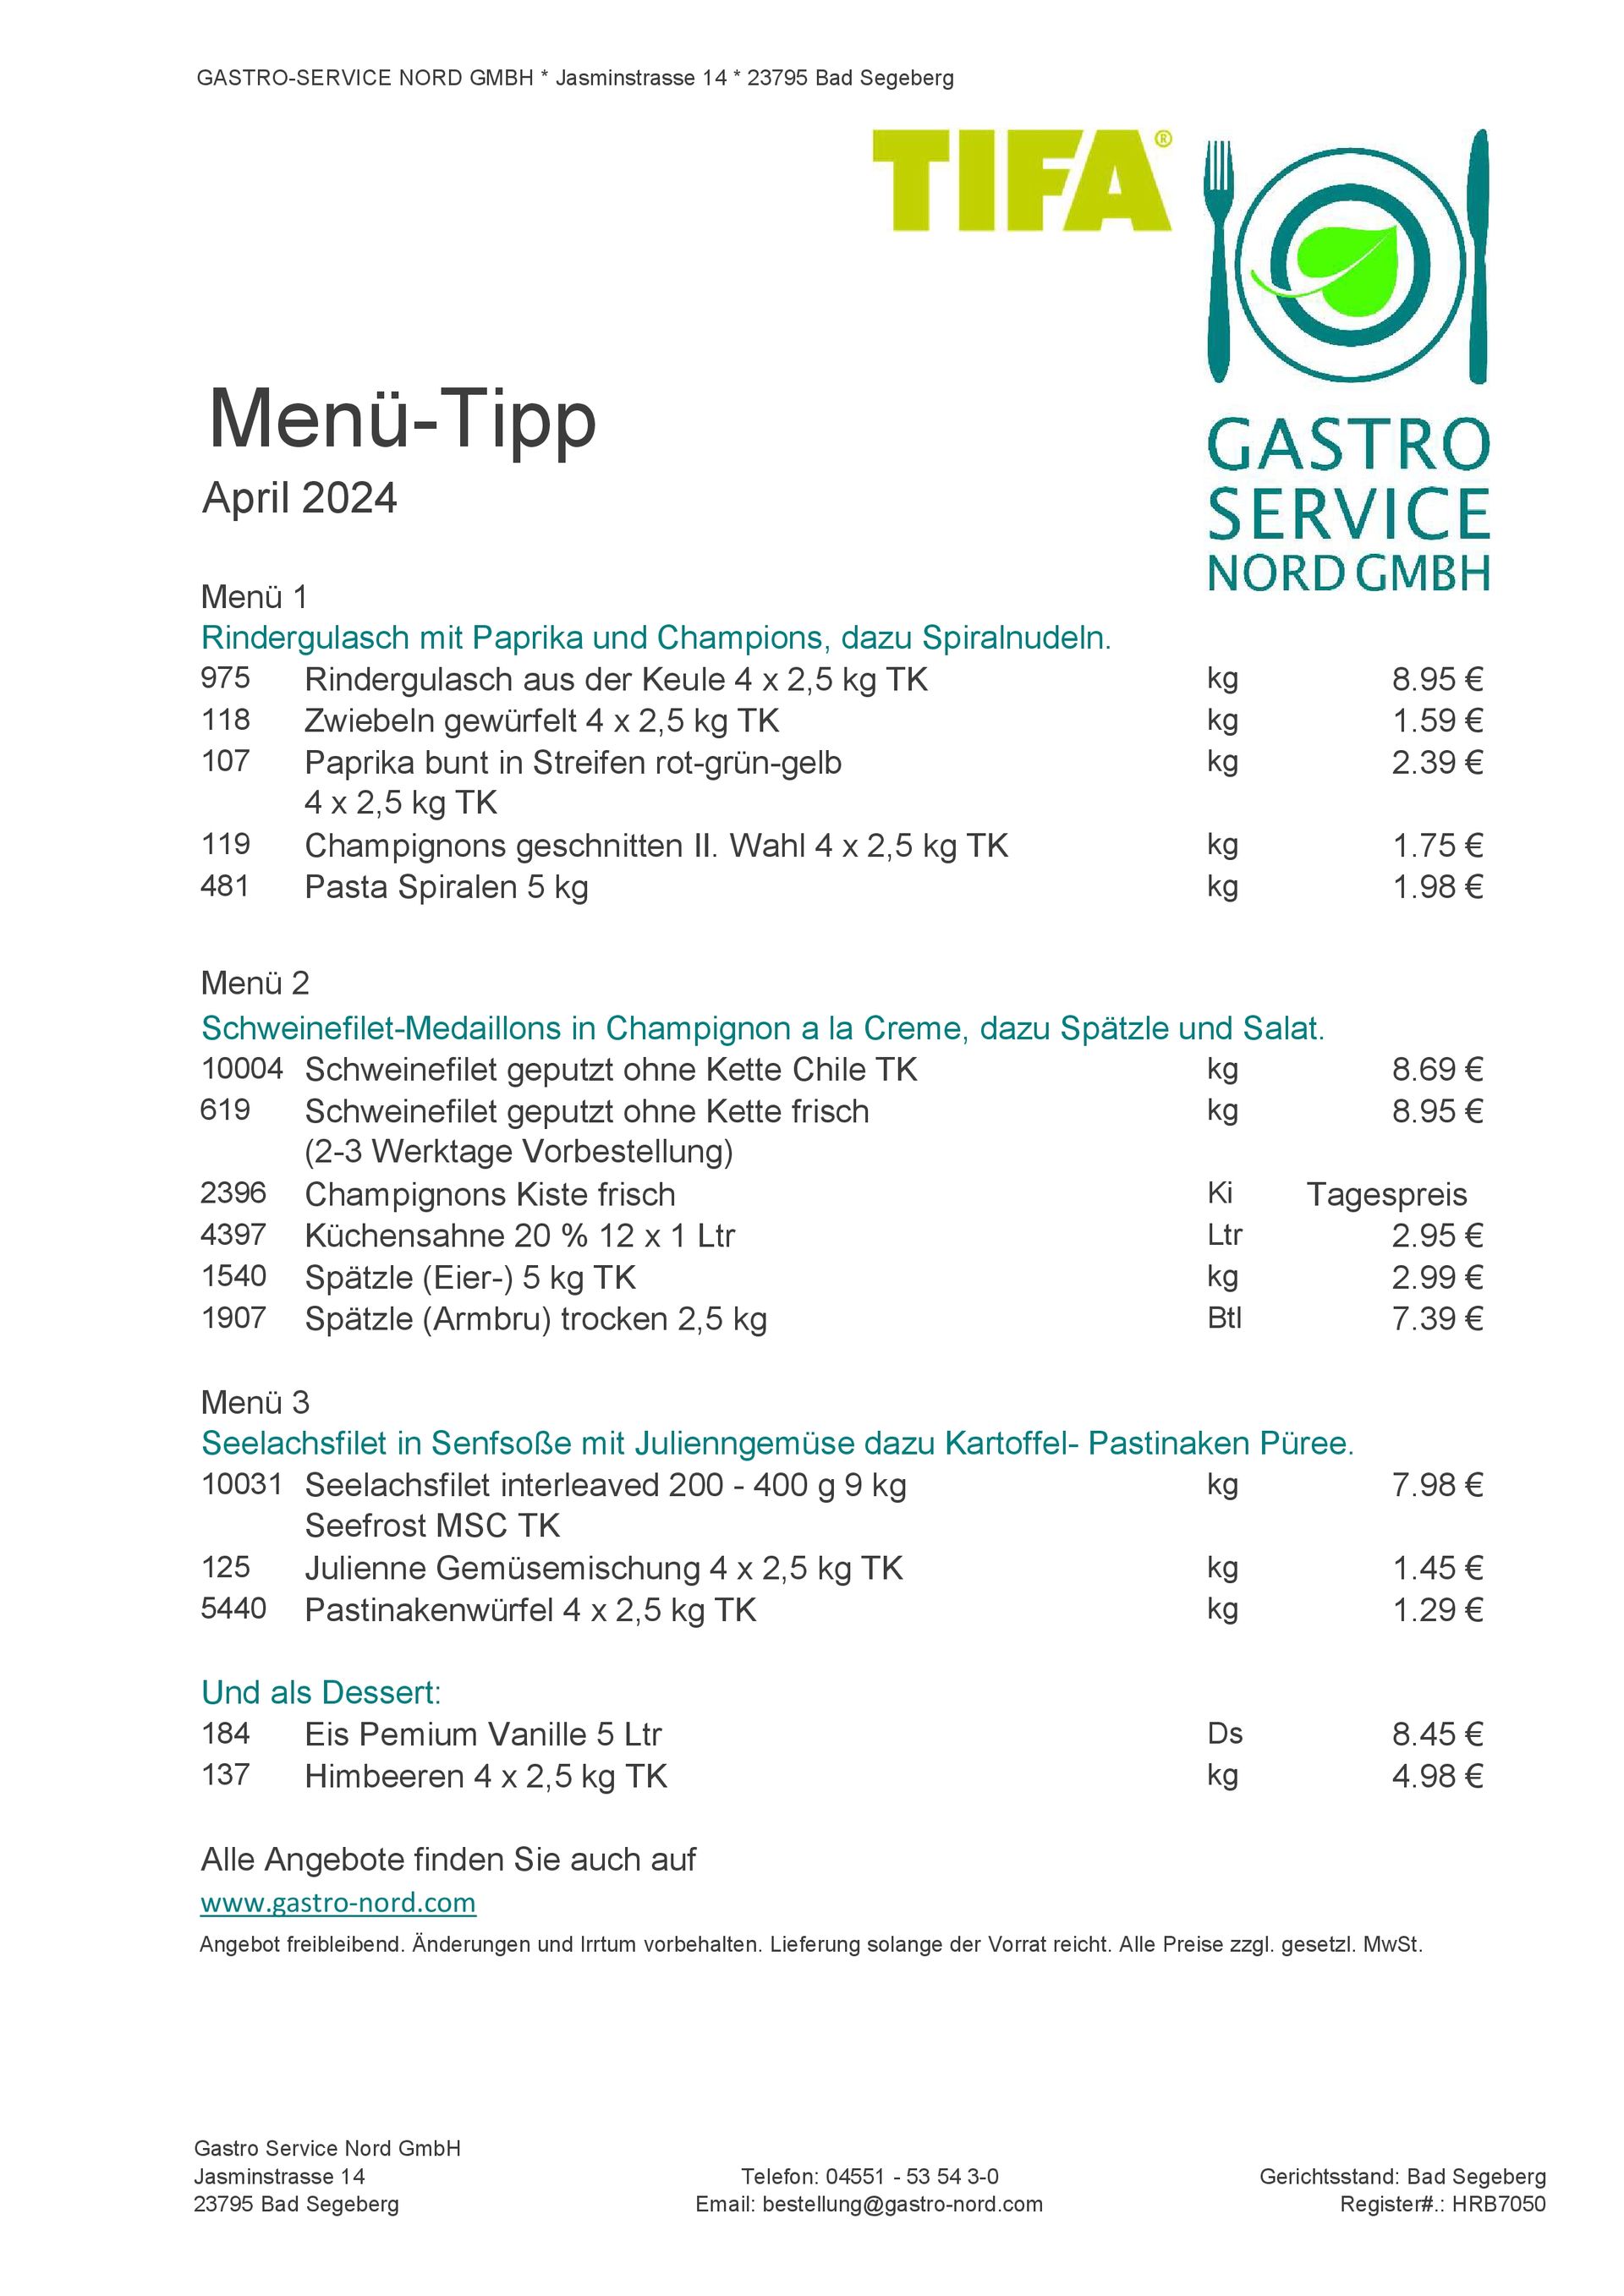 Gastro-Service Nord Menue-Tipp April 2024